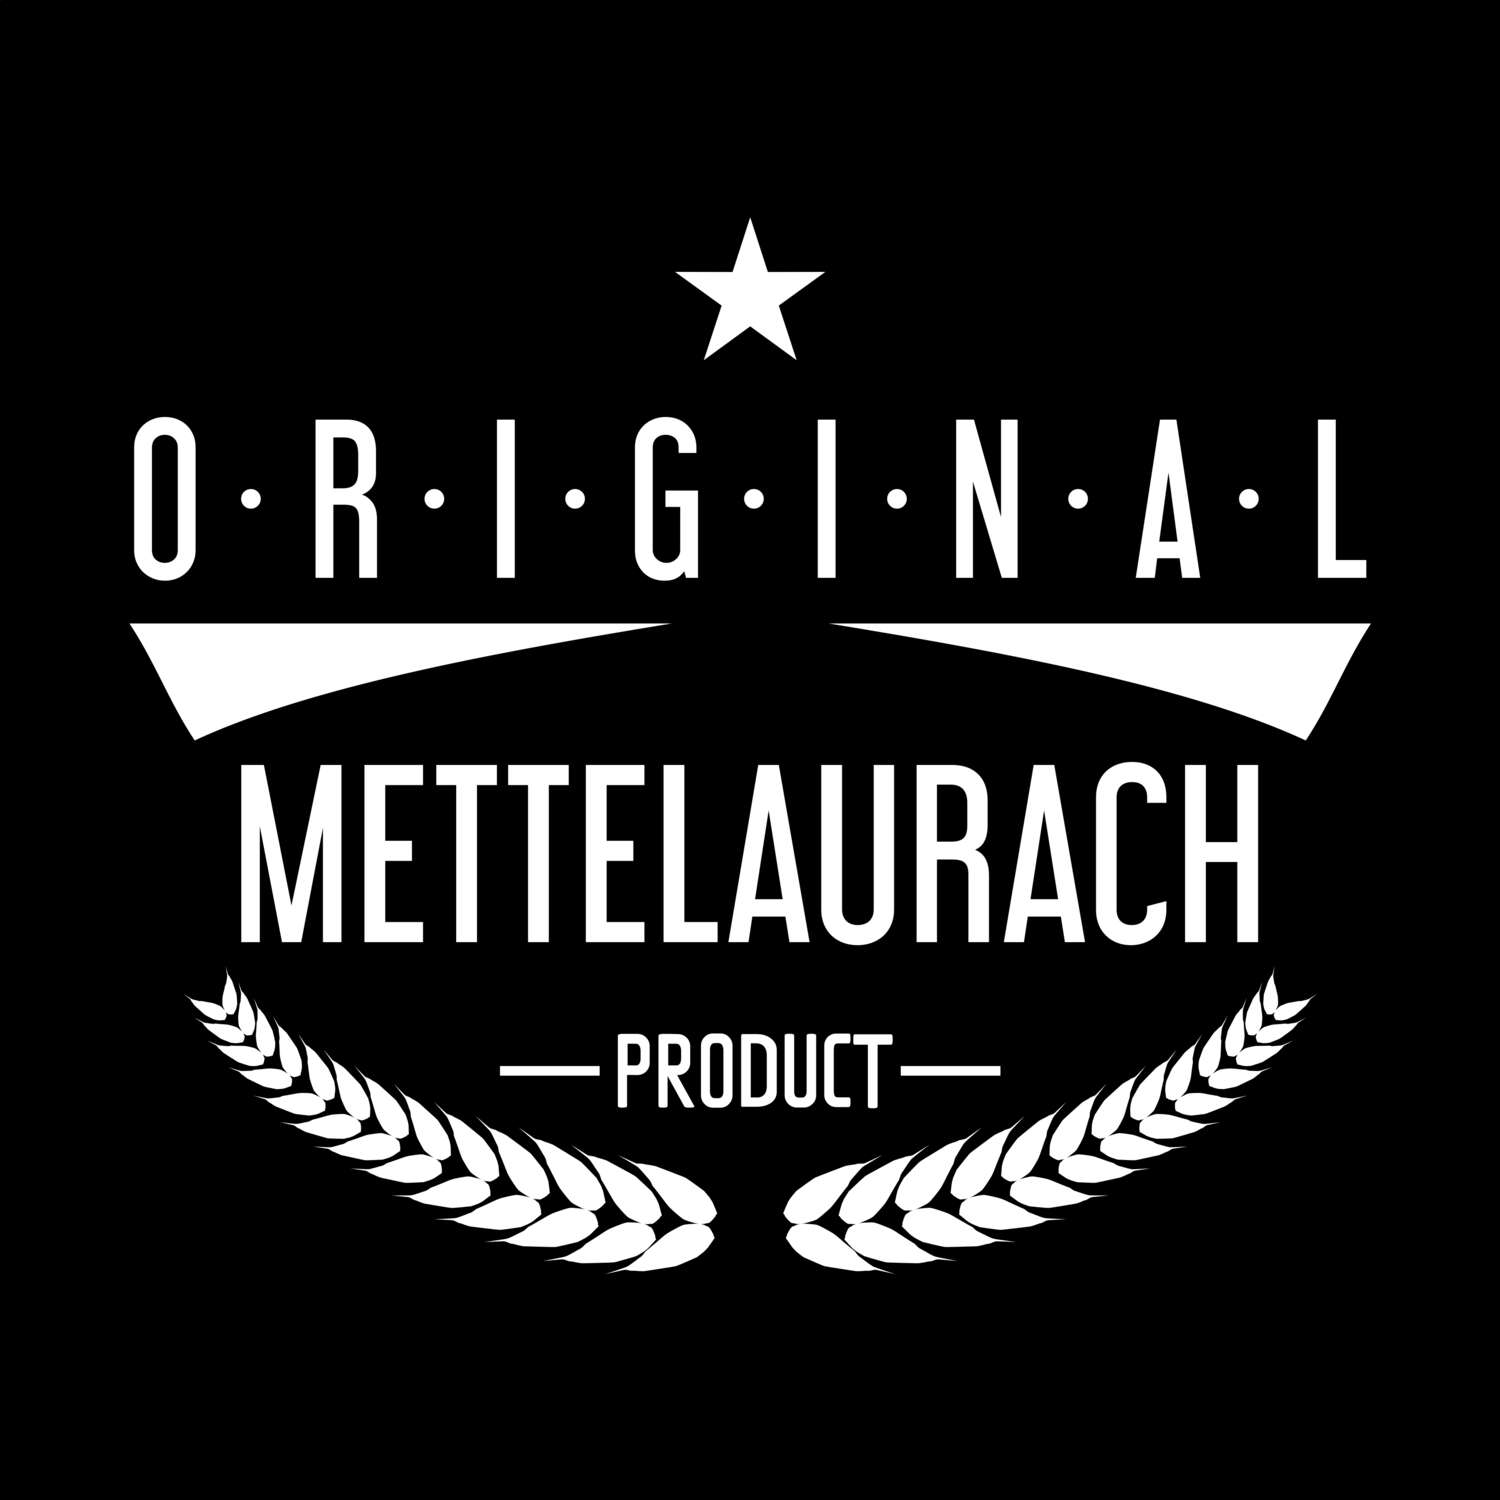 Mettelaurach T-Shirt »Original Product«